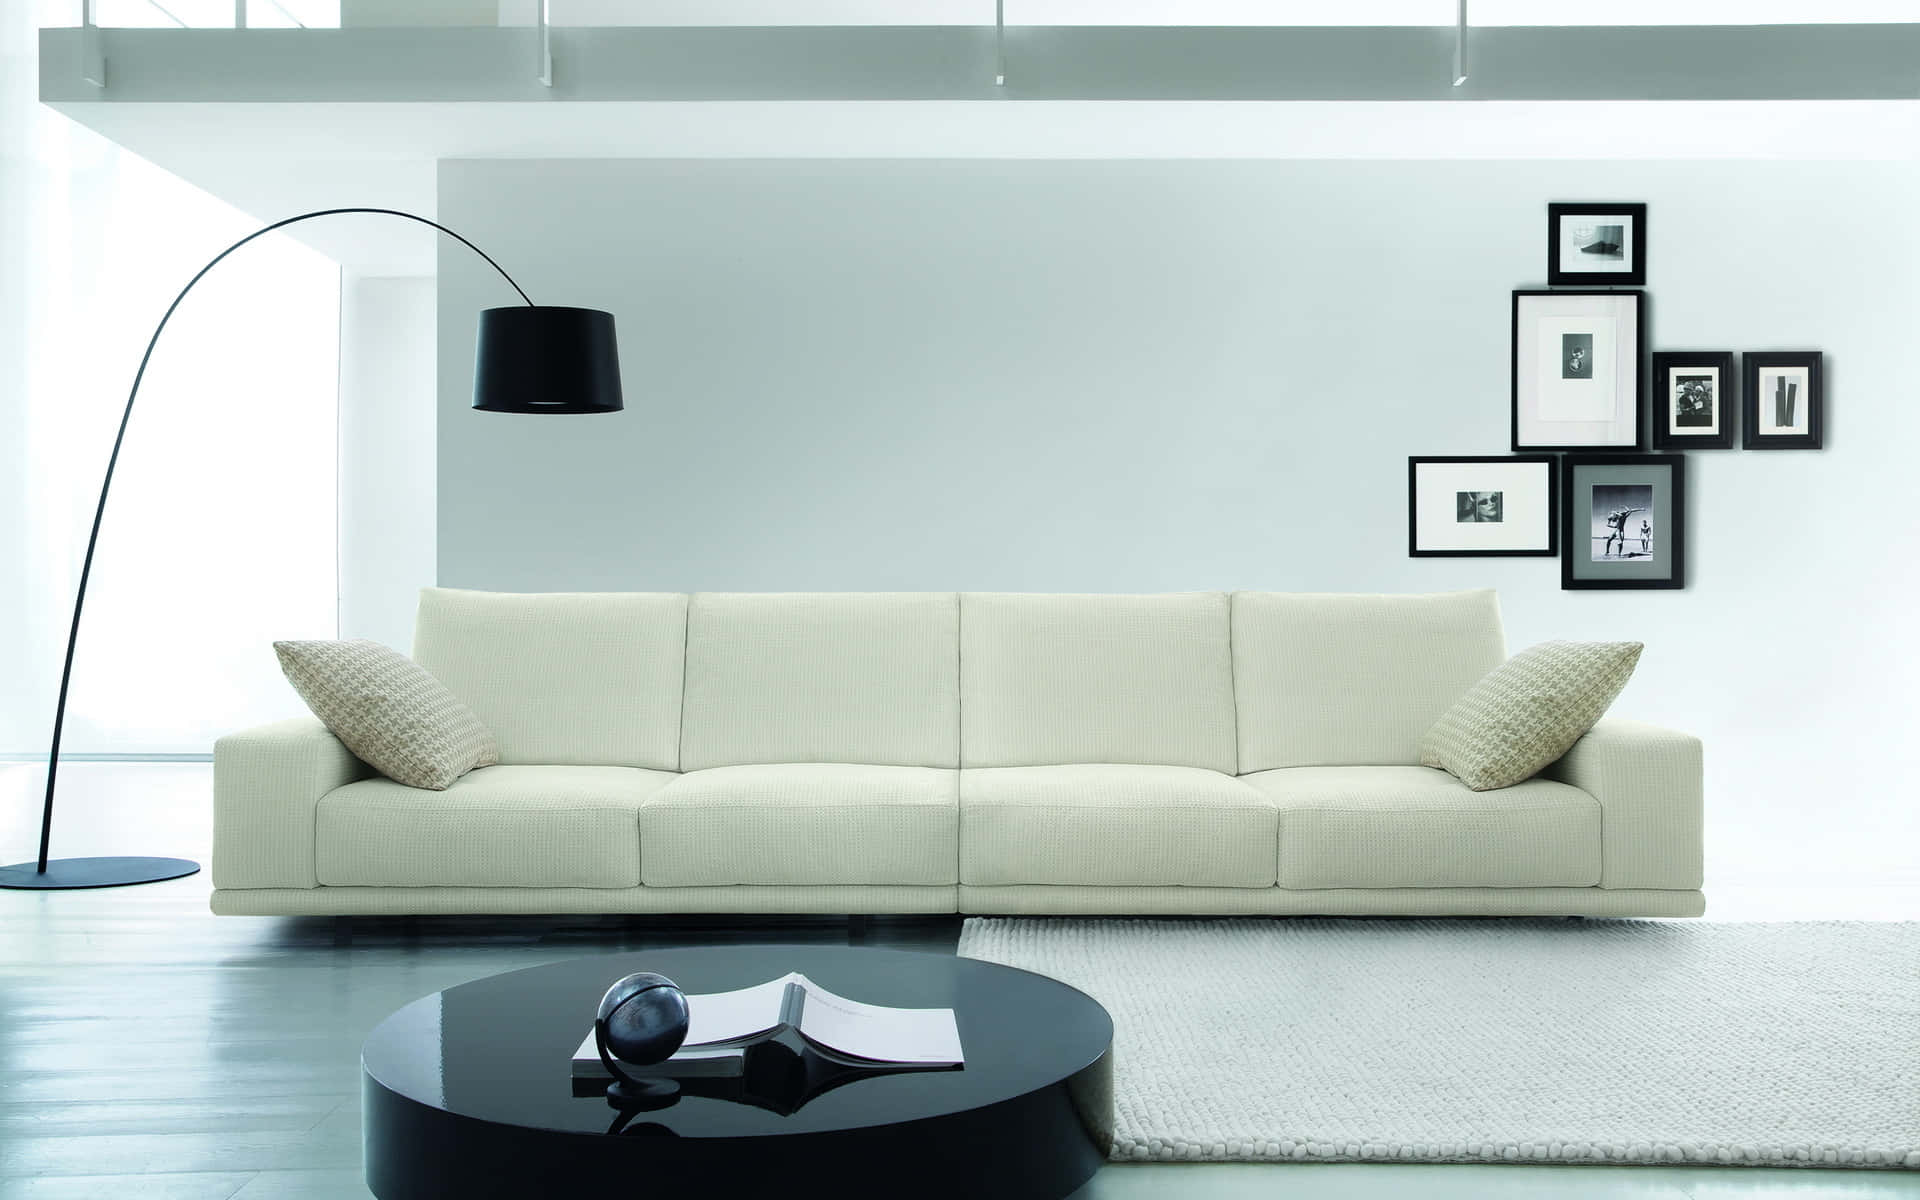 Sofa Desktop Wallpaper Baci Living Room